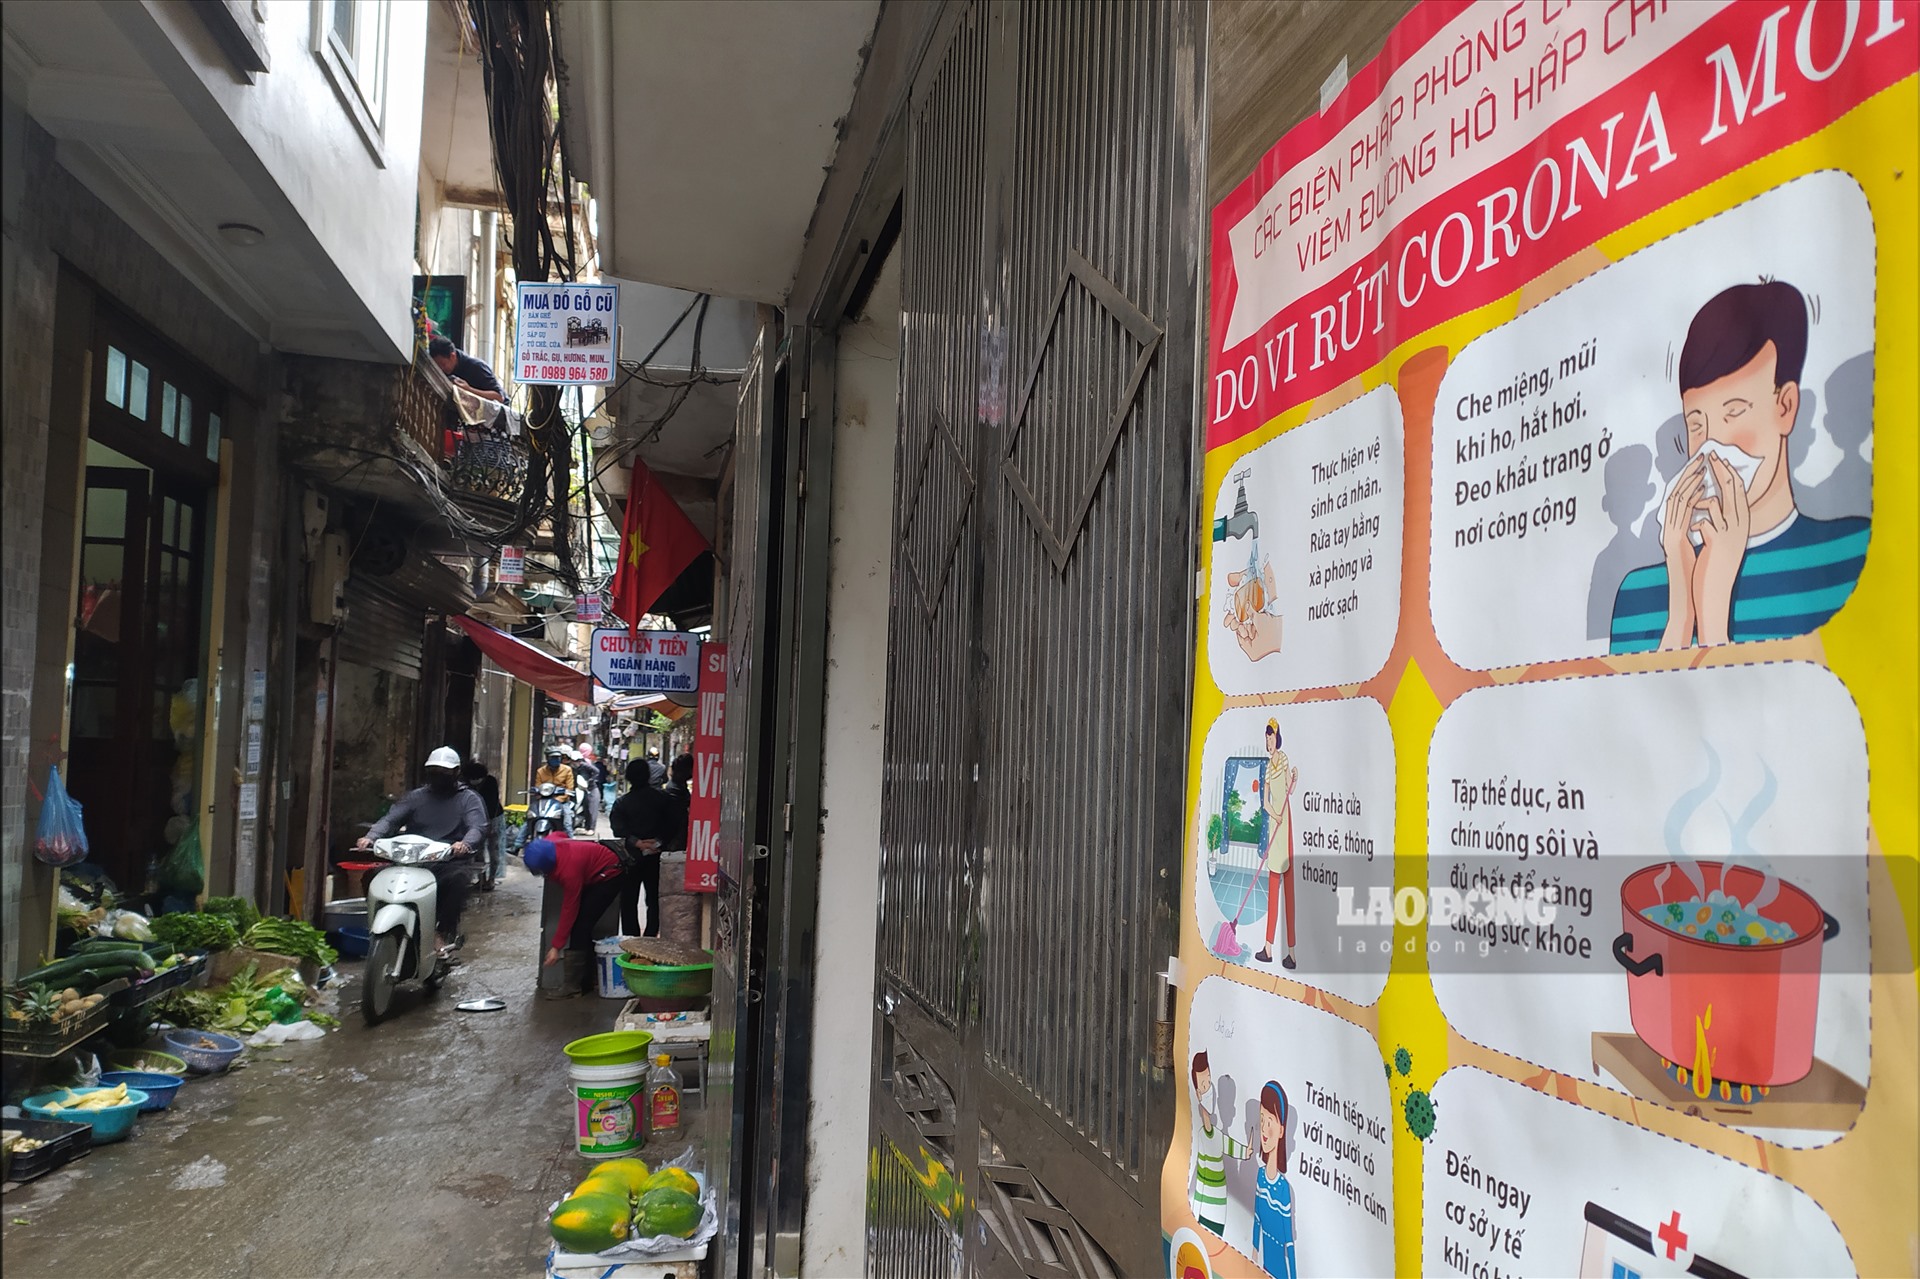 Ngày 31.3, theo ghi nhận của phóng viên, từ đầu giờ sáng, chợ cóc nằm dọc trong con ngõ trên phố Hào Nam đã đặc kín người mua bán, tụ tập trong khi dịch bệnh Covid-19 đang diễn biến phức tạp.